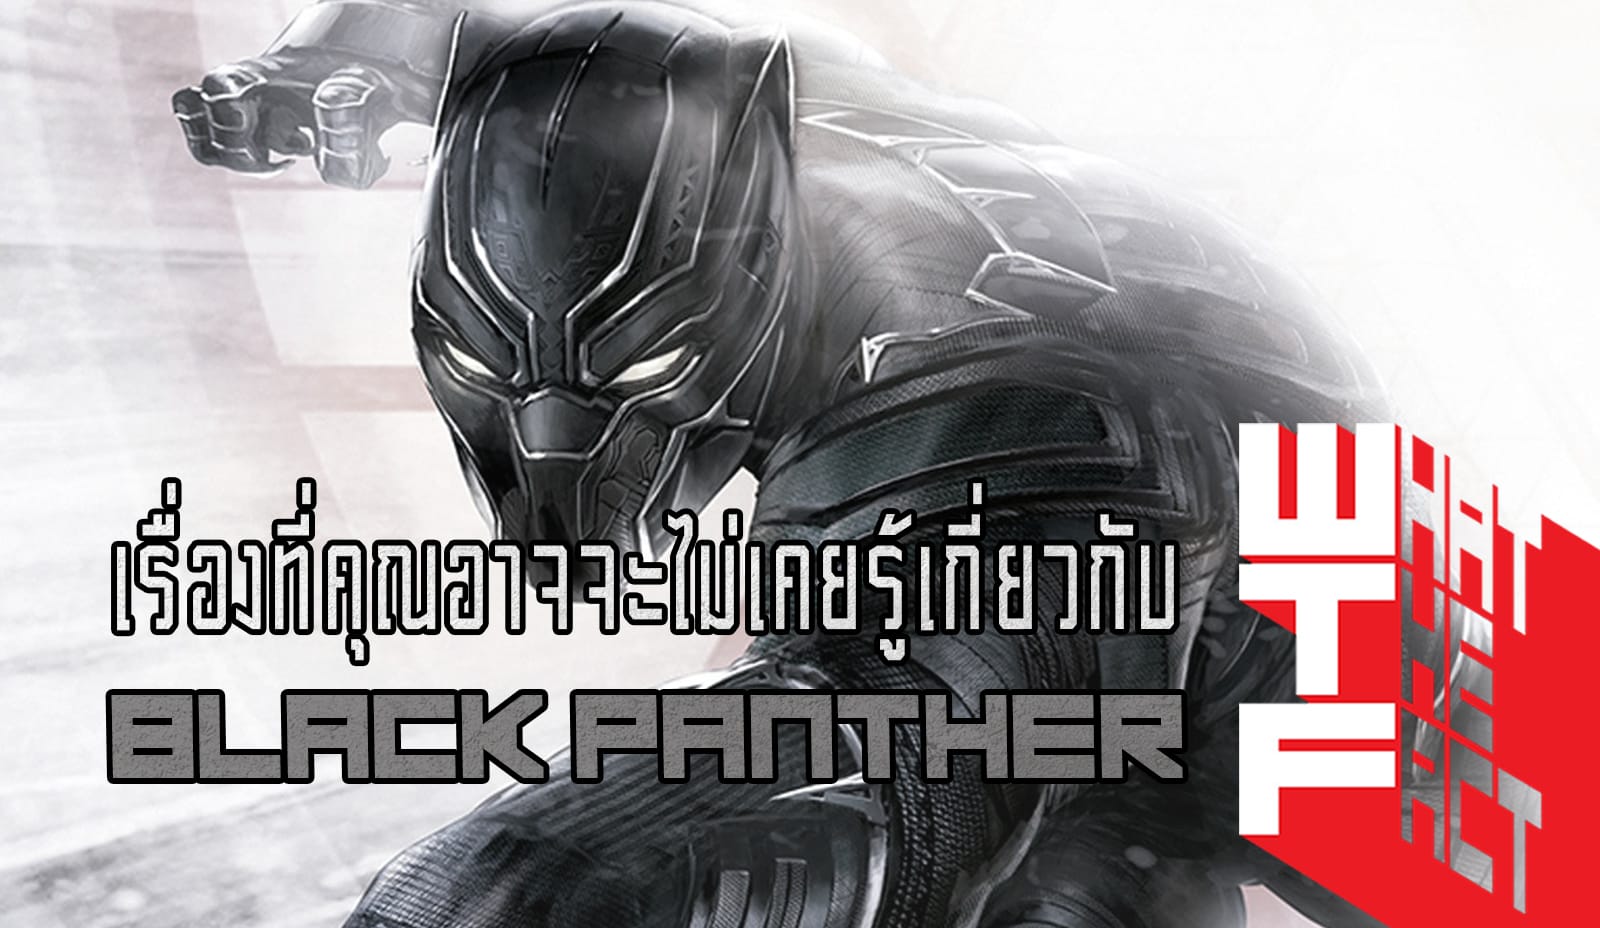 ประวัติและเรื่องที่คุณอาจจะยังไม่เคยรู้เกี่ยวกับ Black Panther ราชาแห่ง Wakanda !!! (MARVRL COMIC)